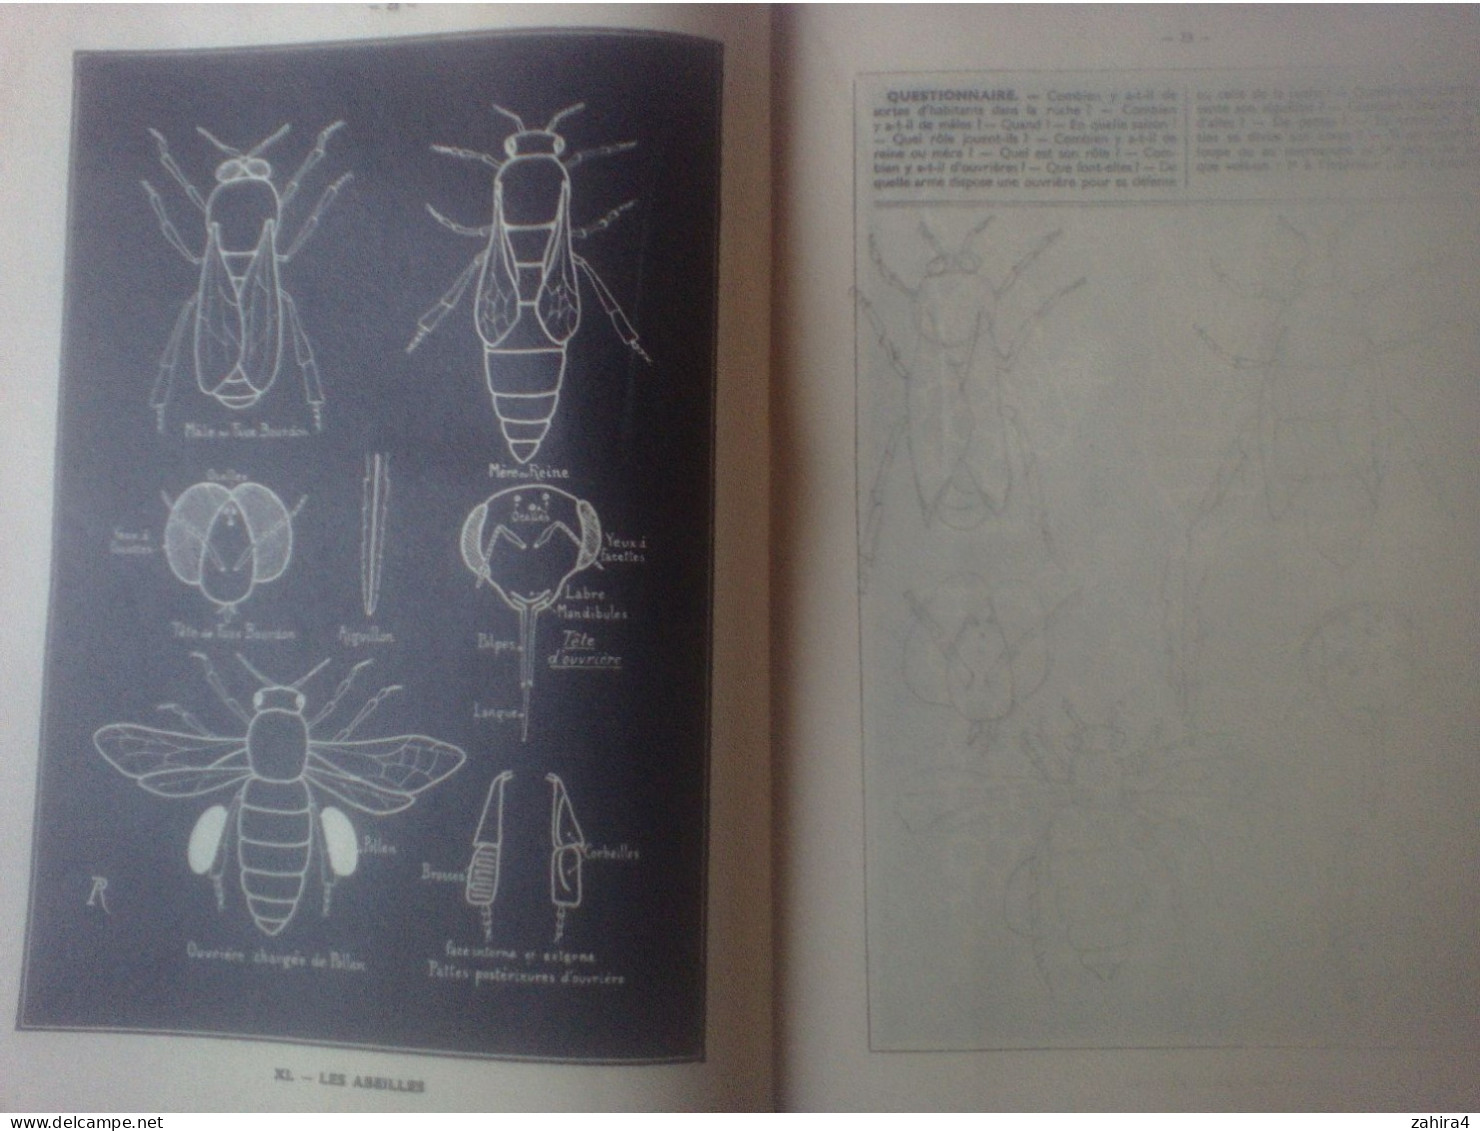 A Richard Histoire naturelle élémentaire en cahiers II Les animaux Fernand Nathan Parischeval tortue abeille ver à soie